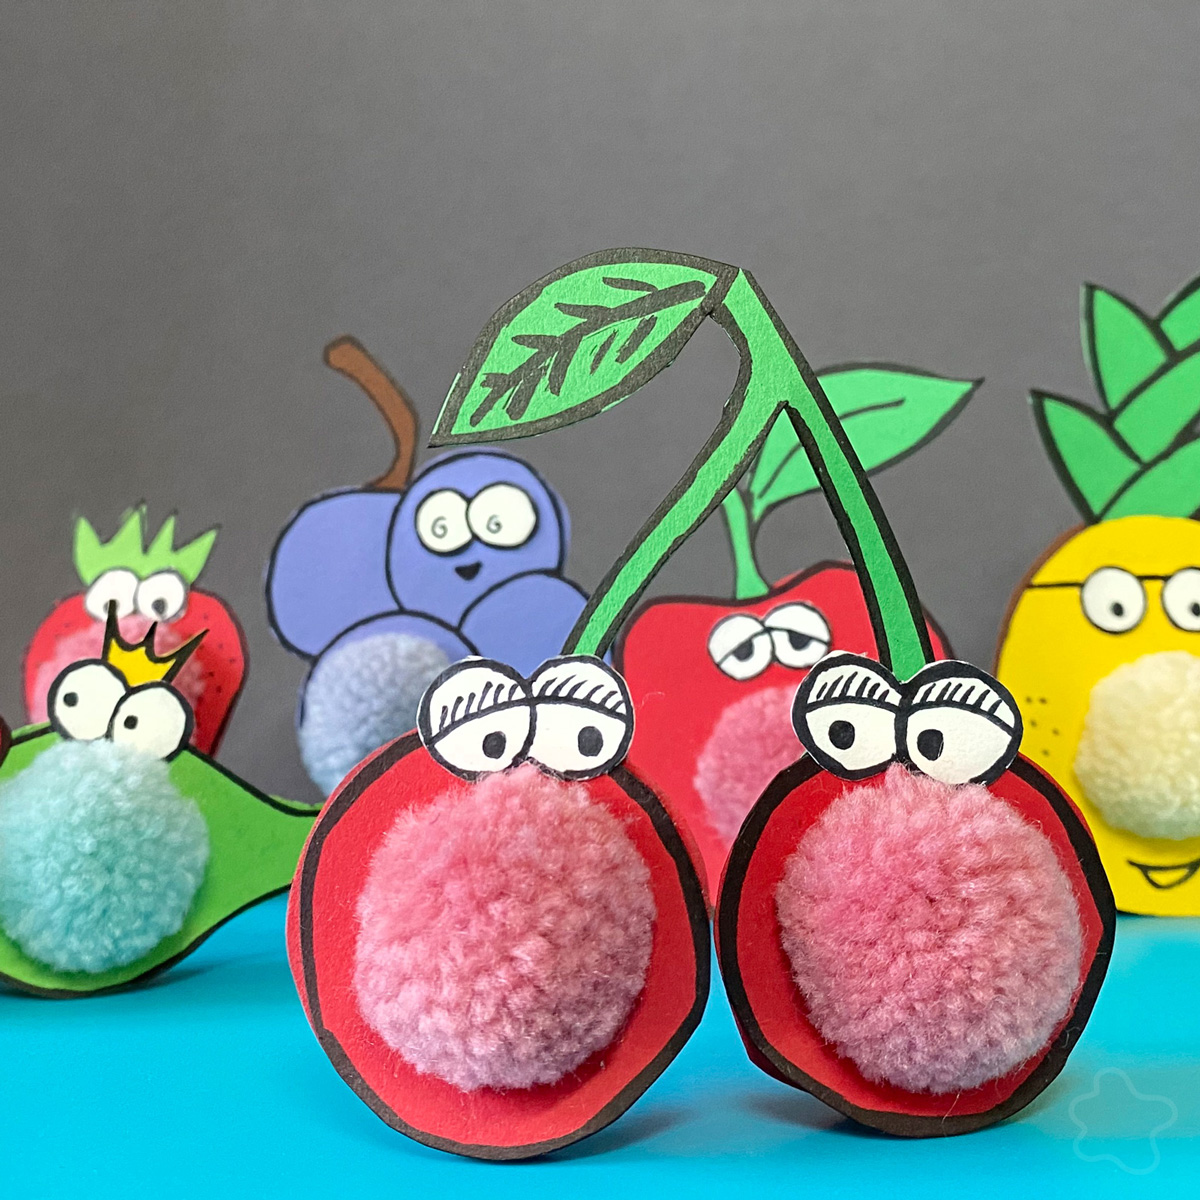 Kirschen, Ananas, Apfel, Weintraube, Erdbeere aus Fotokarton mit Augen, Mund und Charakter